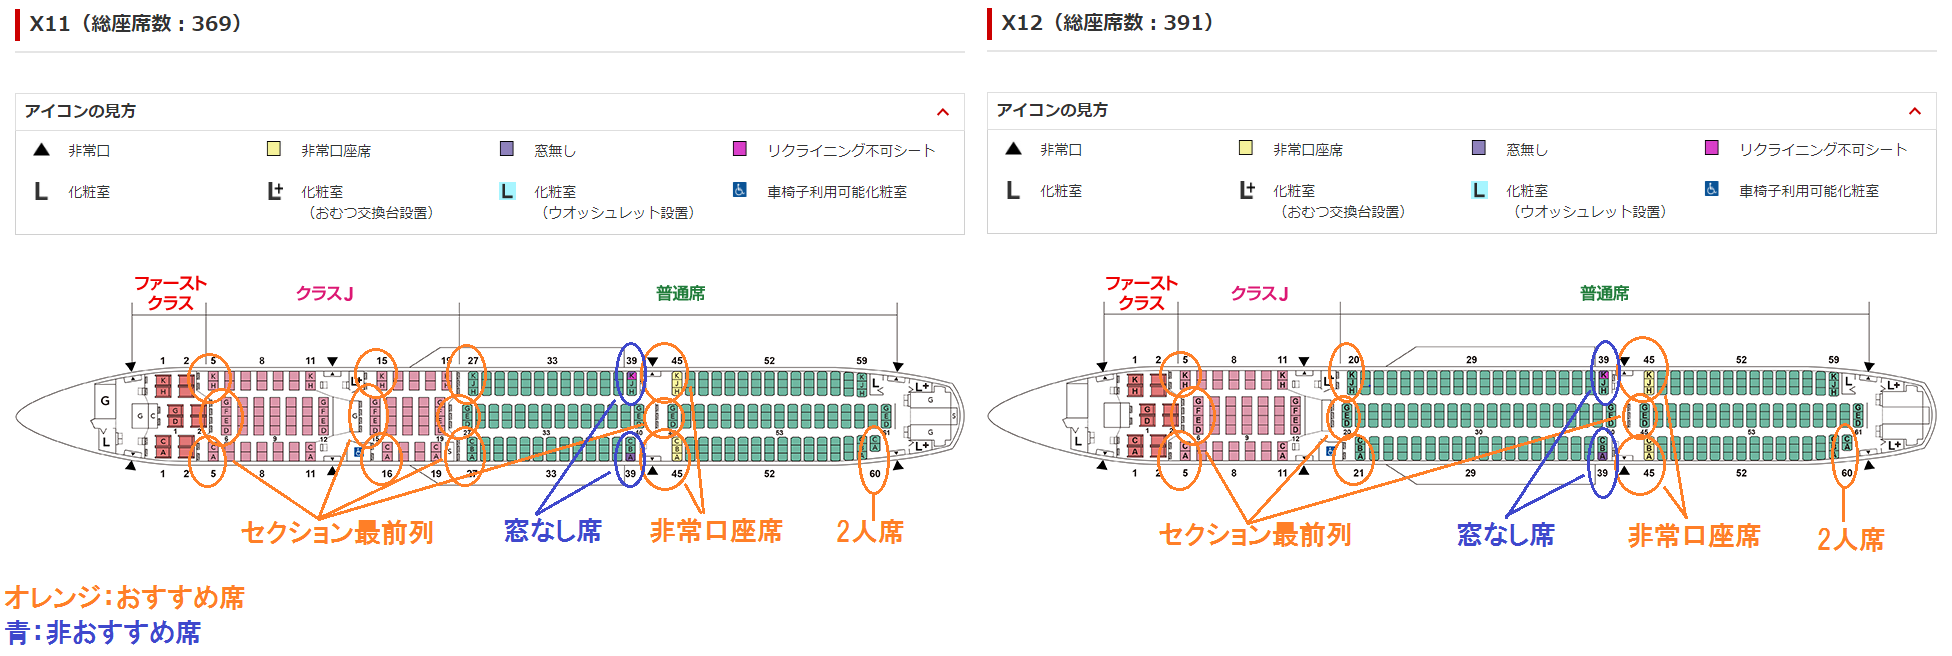 国内線用A350-900型機のおすすめ・非おすすめ座席の座席表